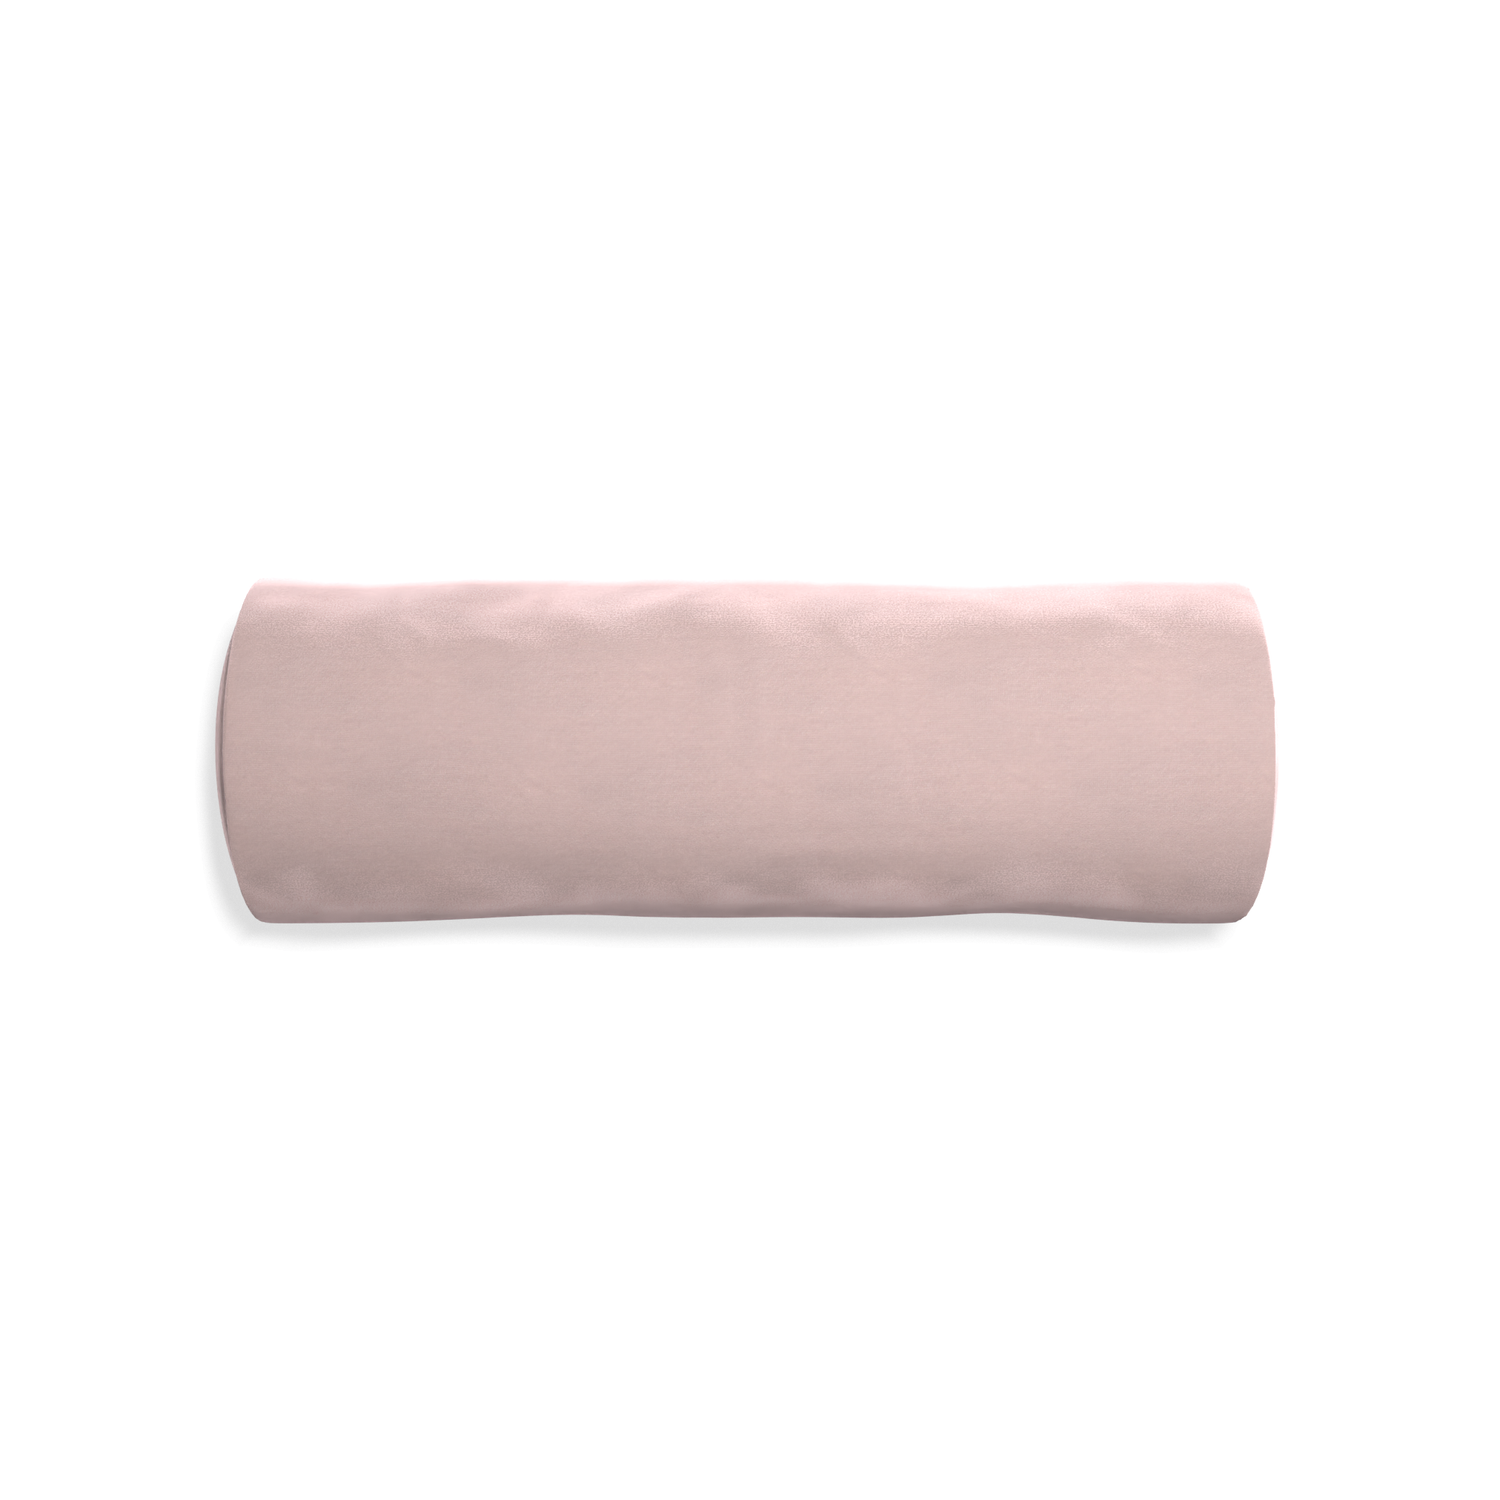 Bolster rose velvet custom pillow with none on white background